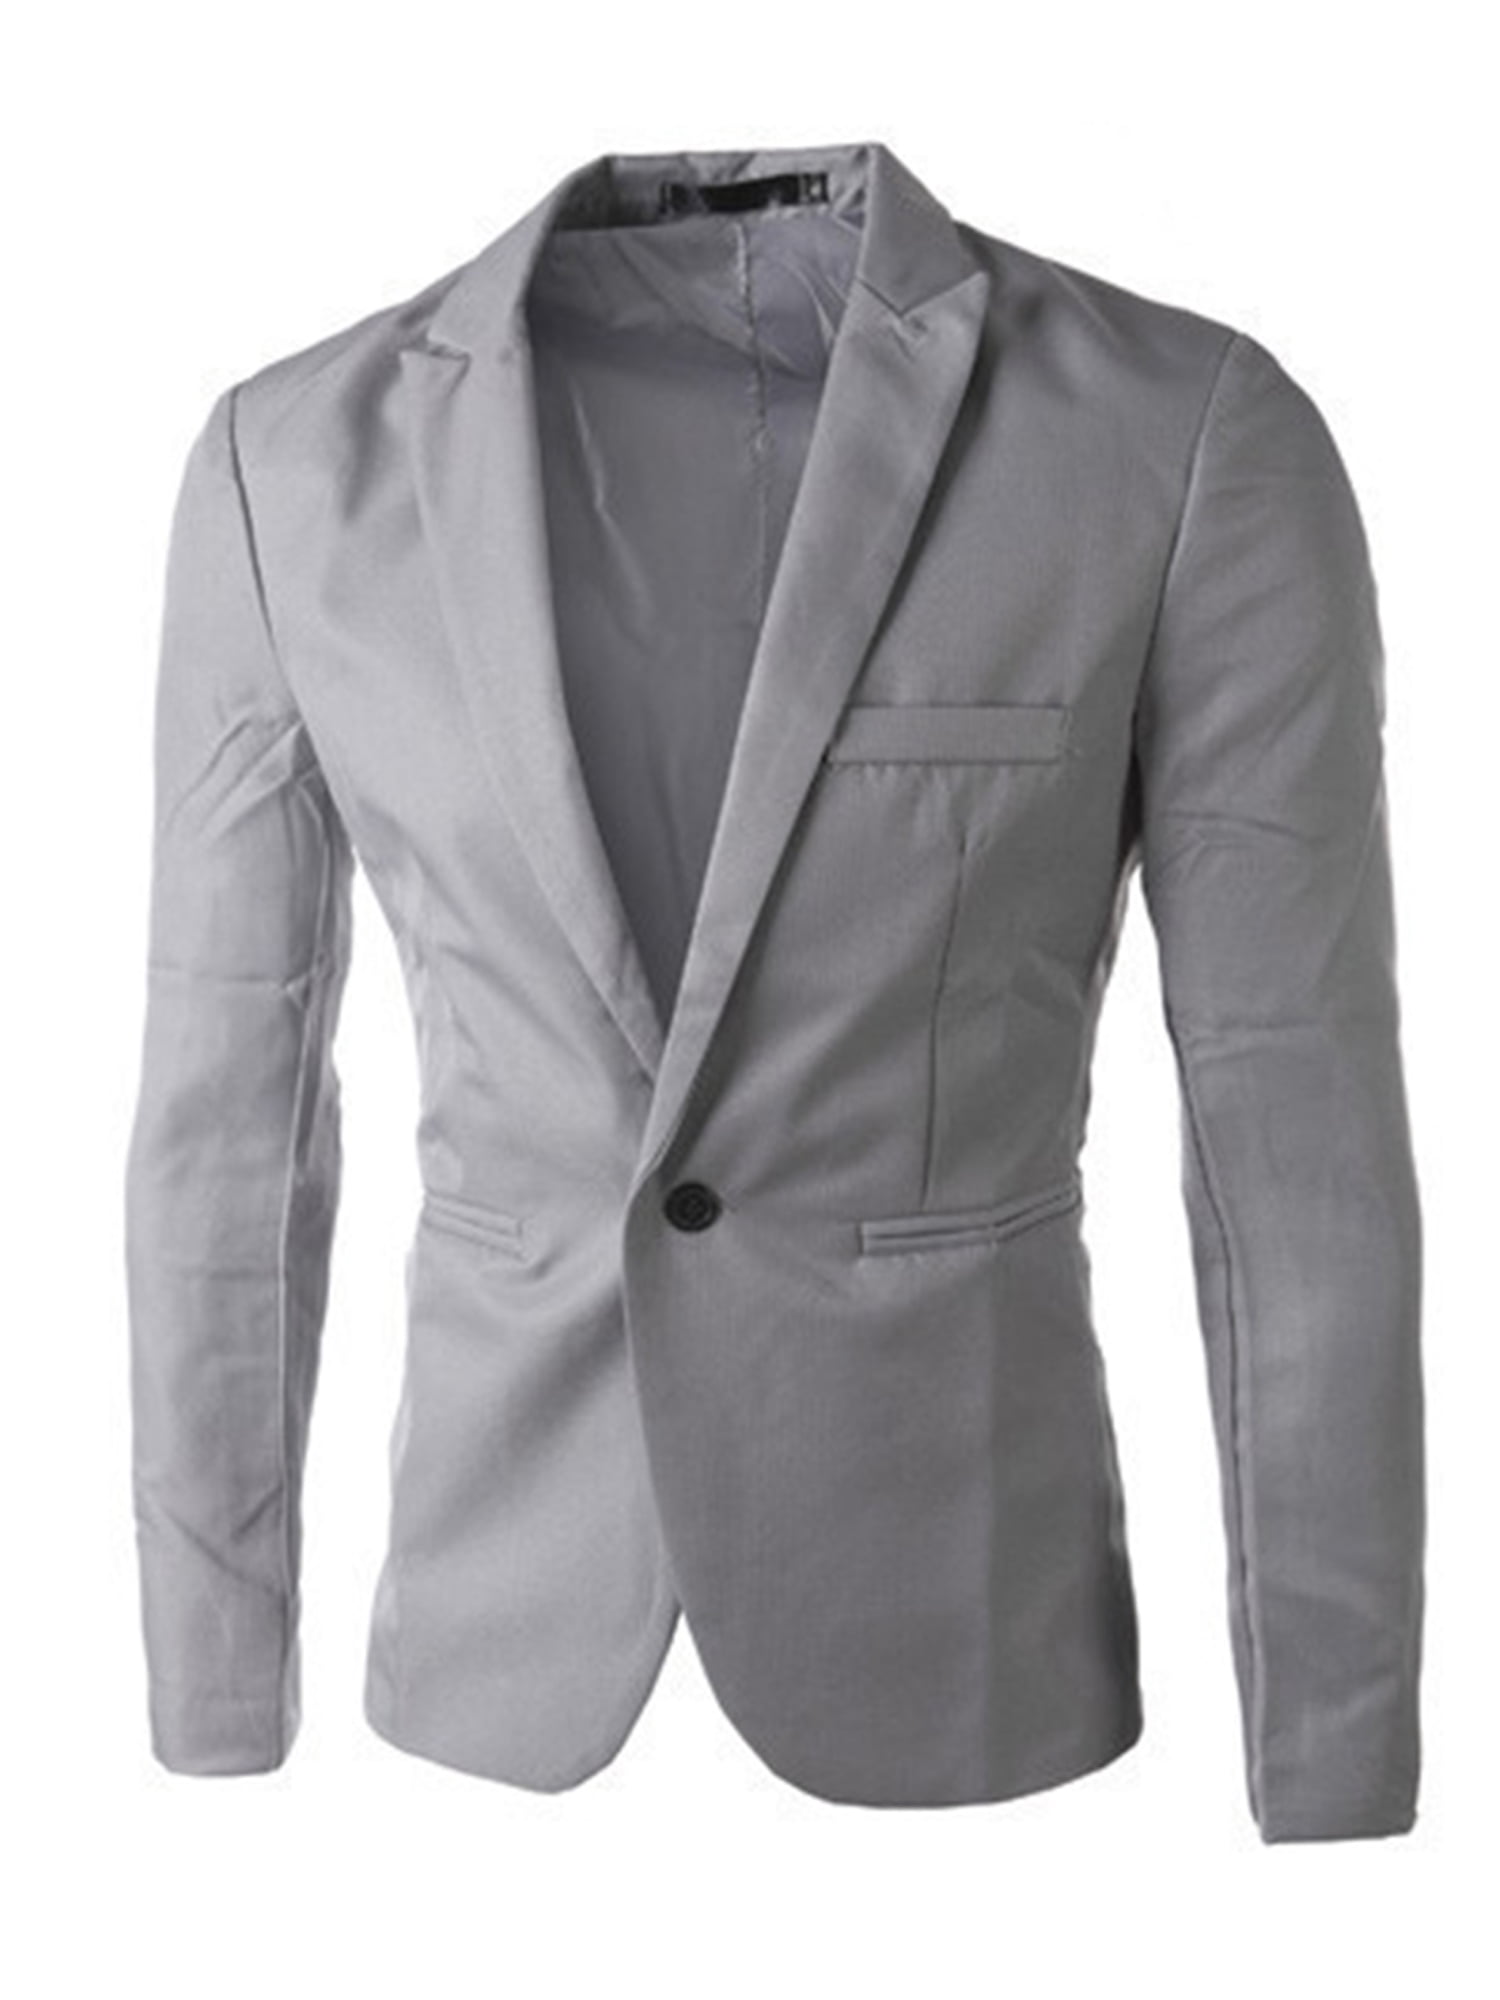 Chaquetas de hombre casuales Slim Fit Blazer One Button Suit Abrigo Solid Casual Top 